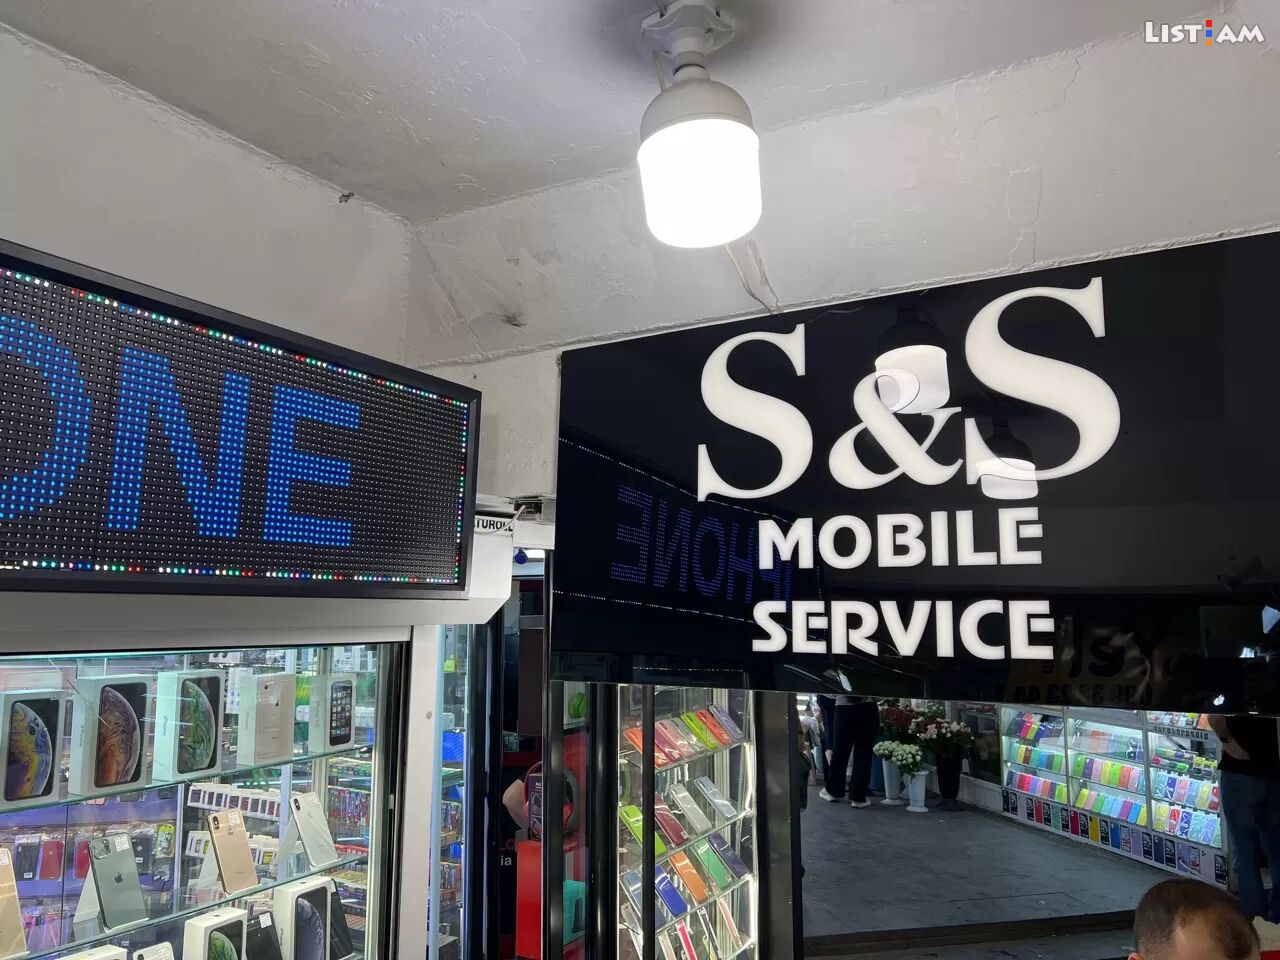 S&S Mobile service